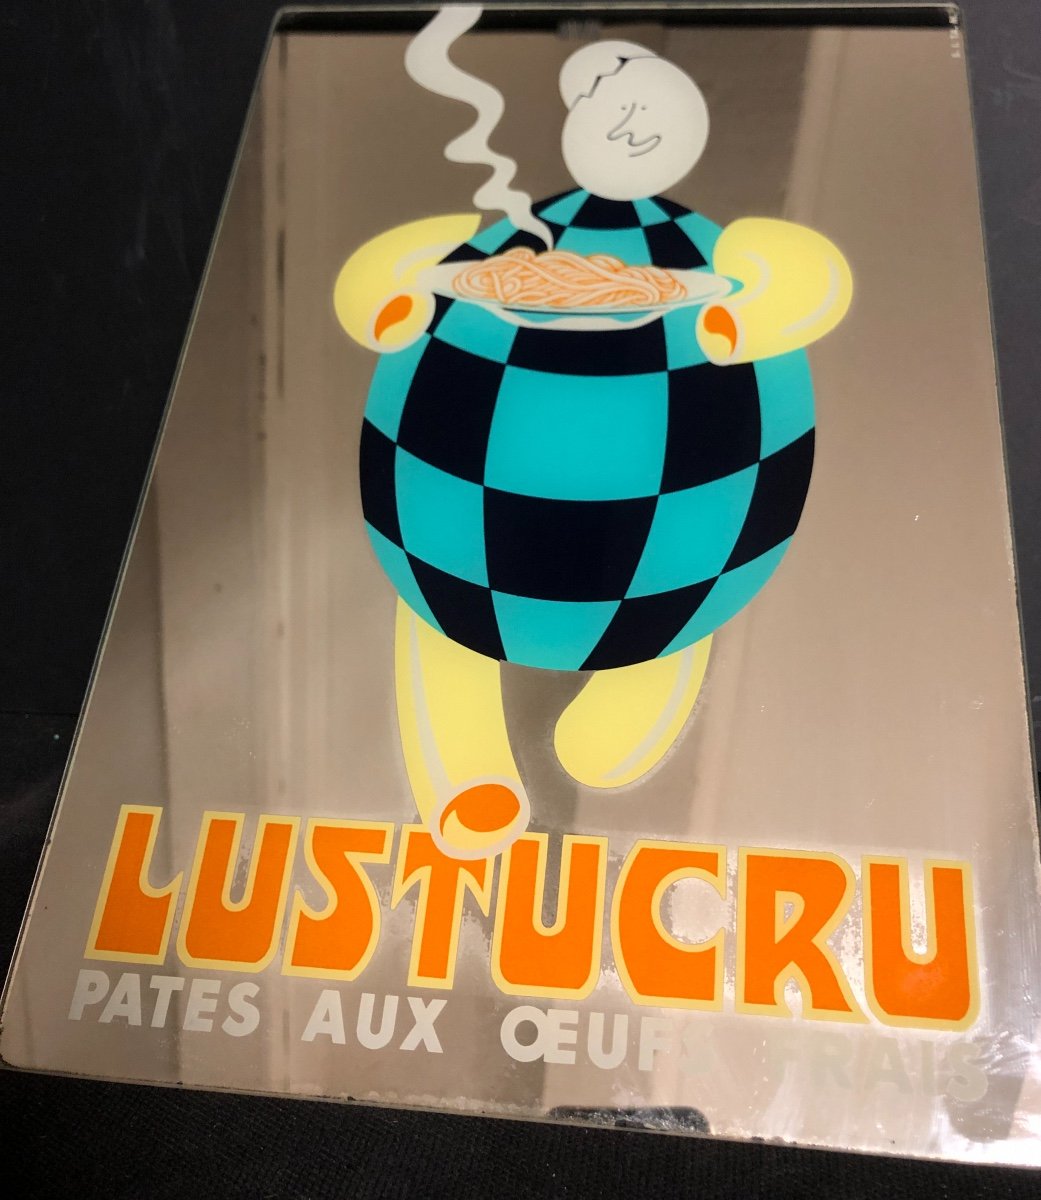 LUSTUCRU RARE MIROIR PUBLICITAIRE Pates aux oeufs frais Cartier-Millon à Grenoble pub-photo-4